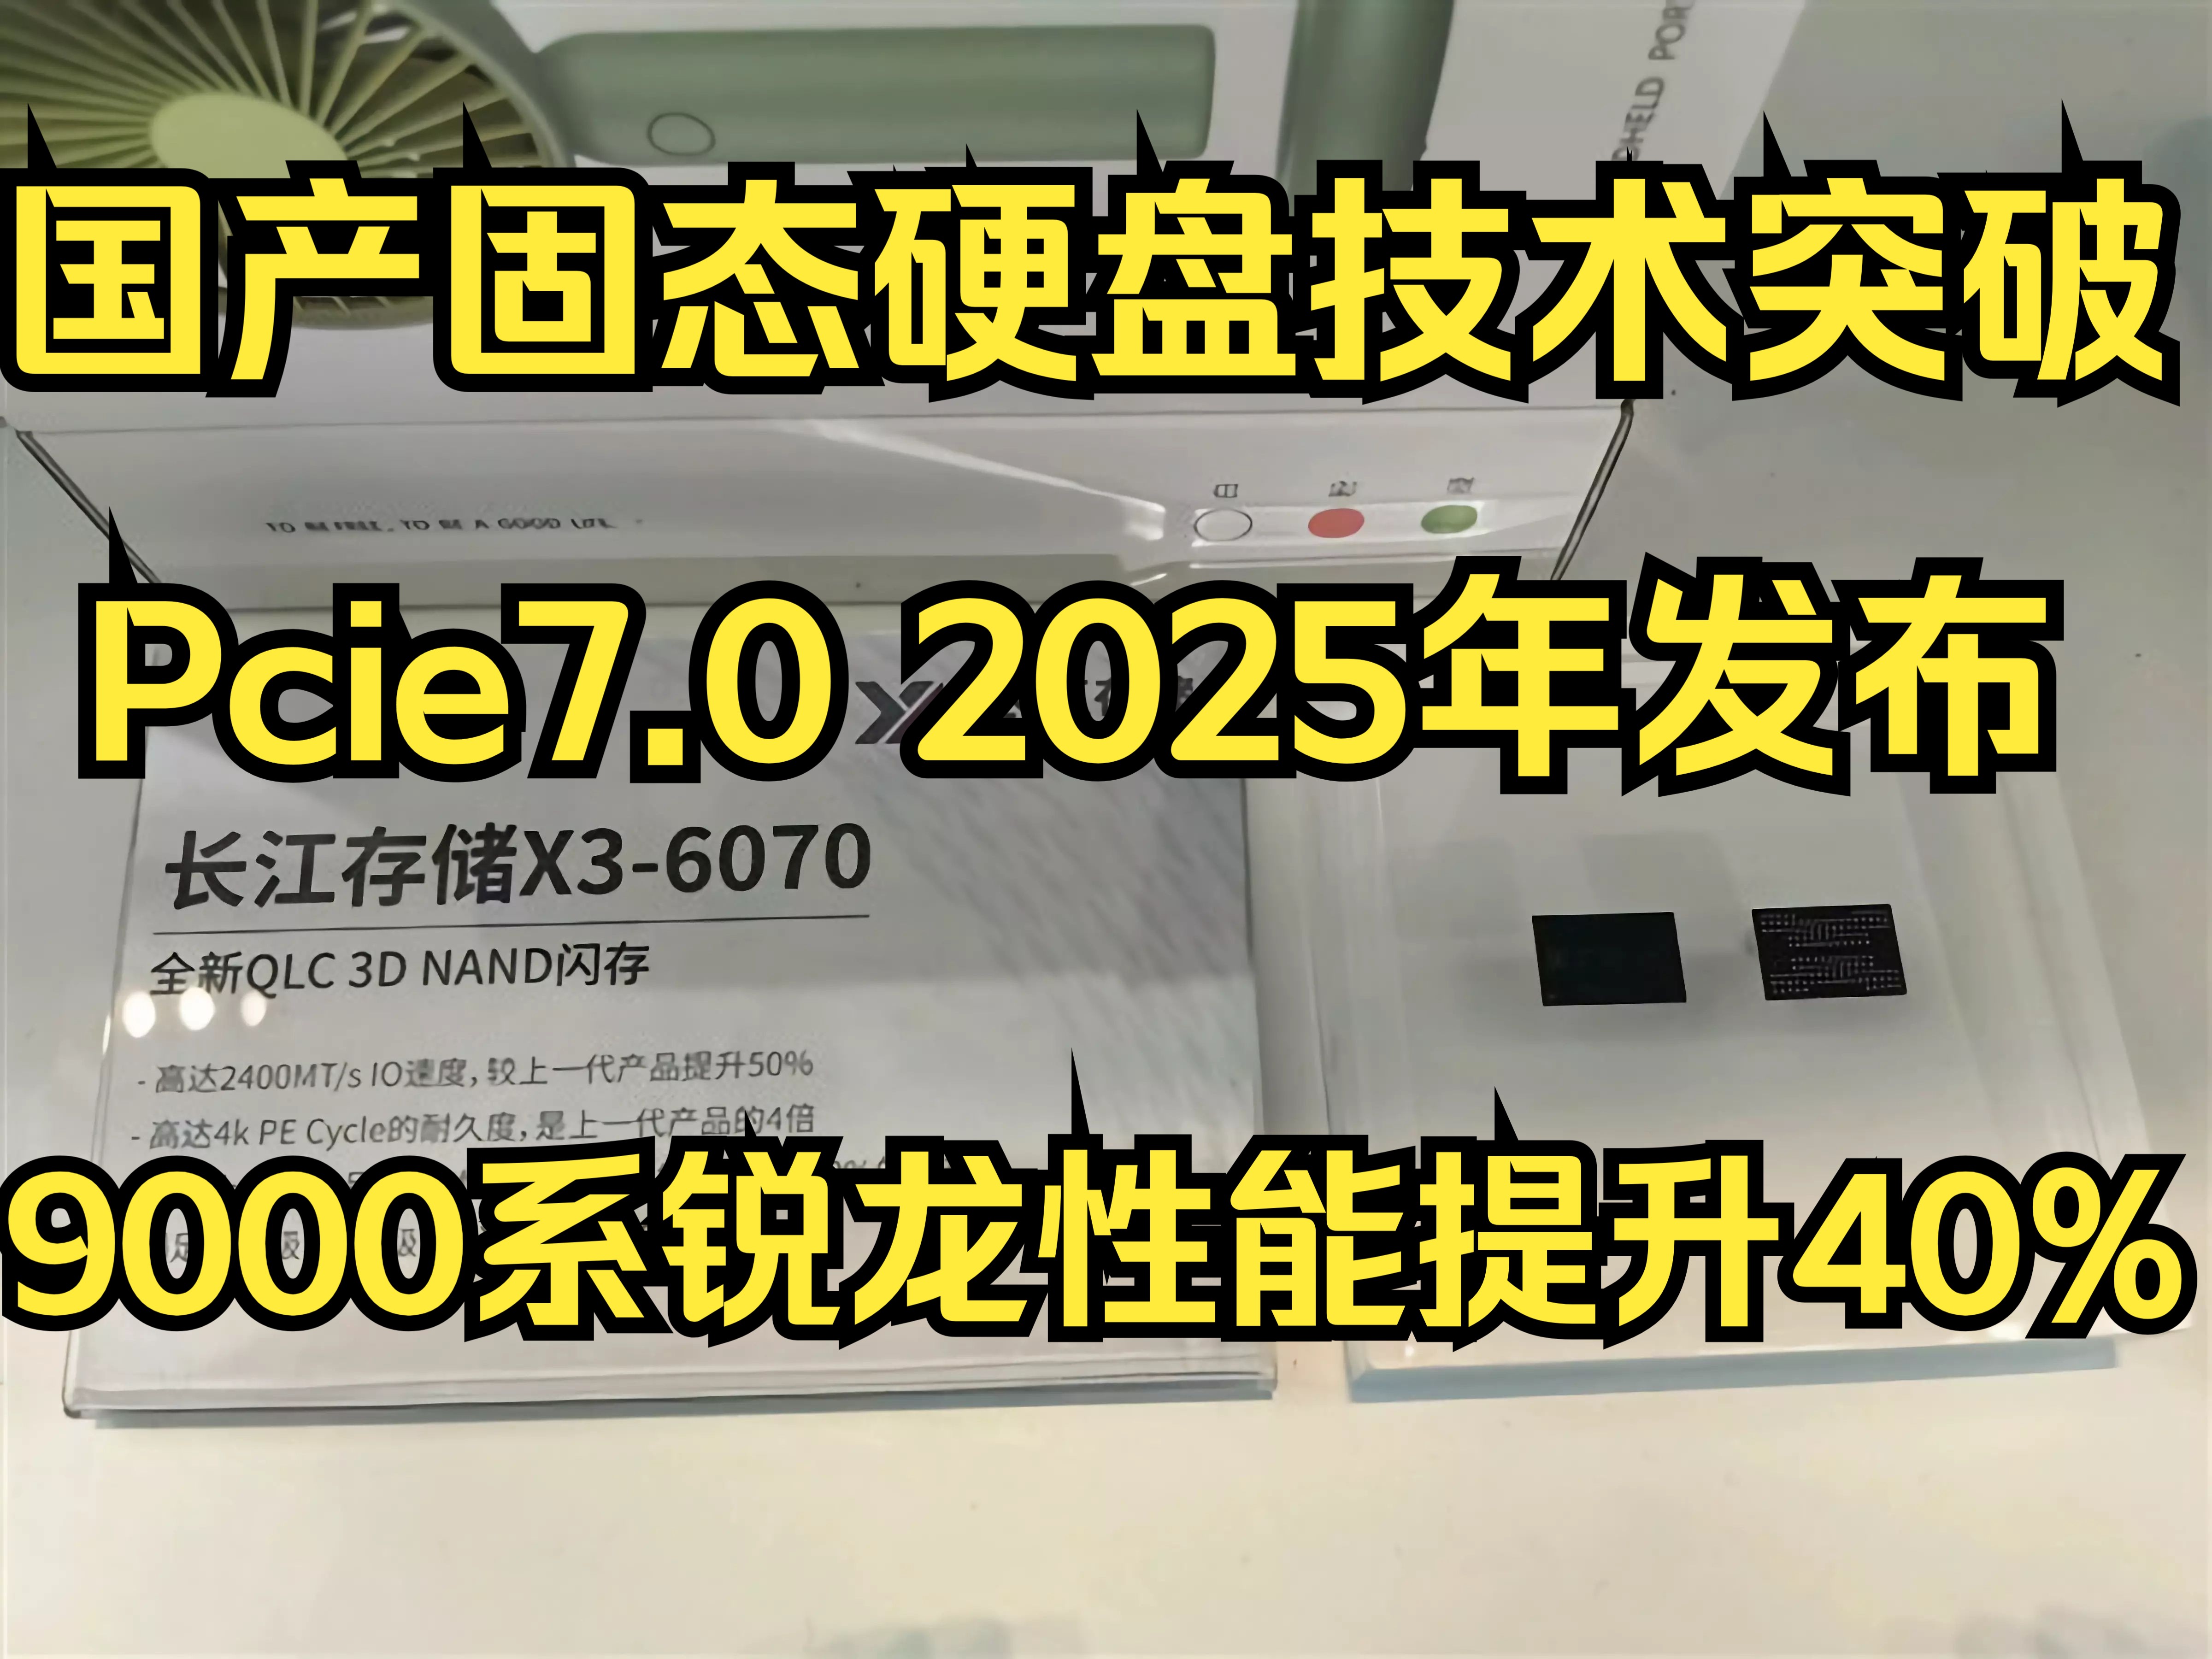 国产固态硬盘技术突破！9000系锐龙性能提升40%！Pcie7.0 2025年发布！